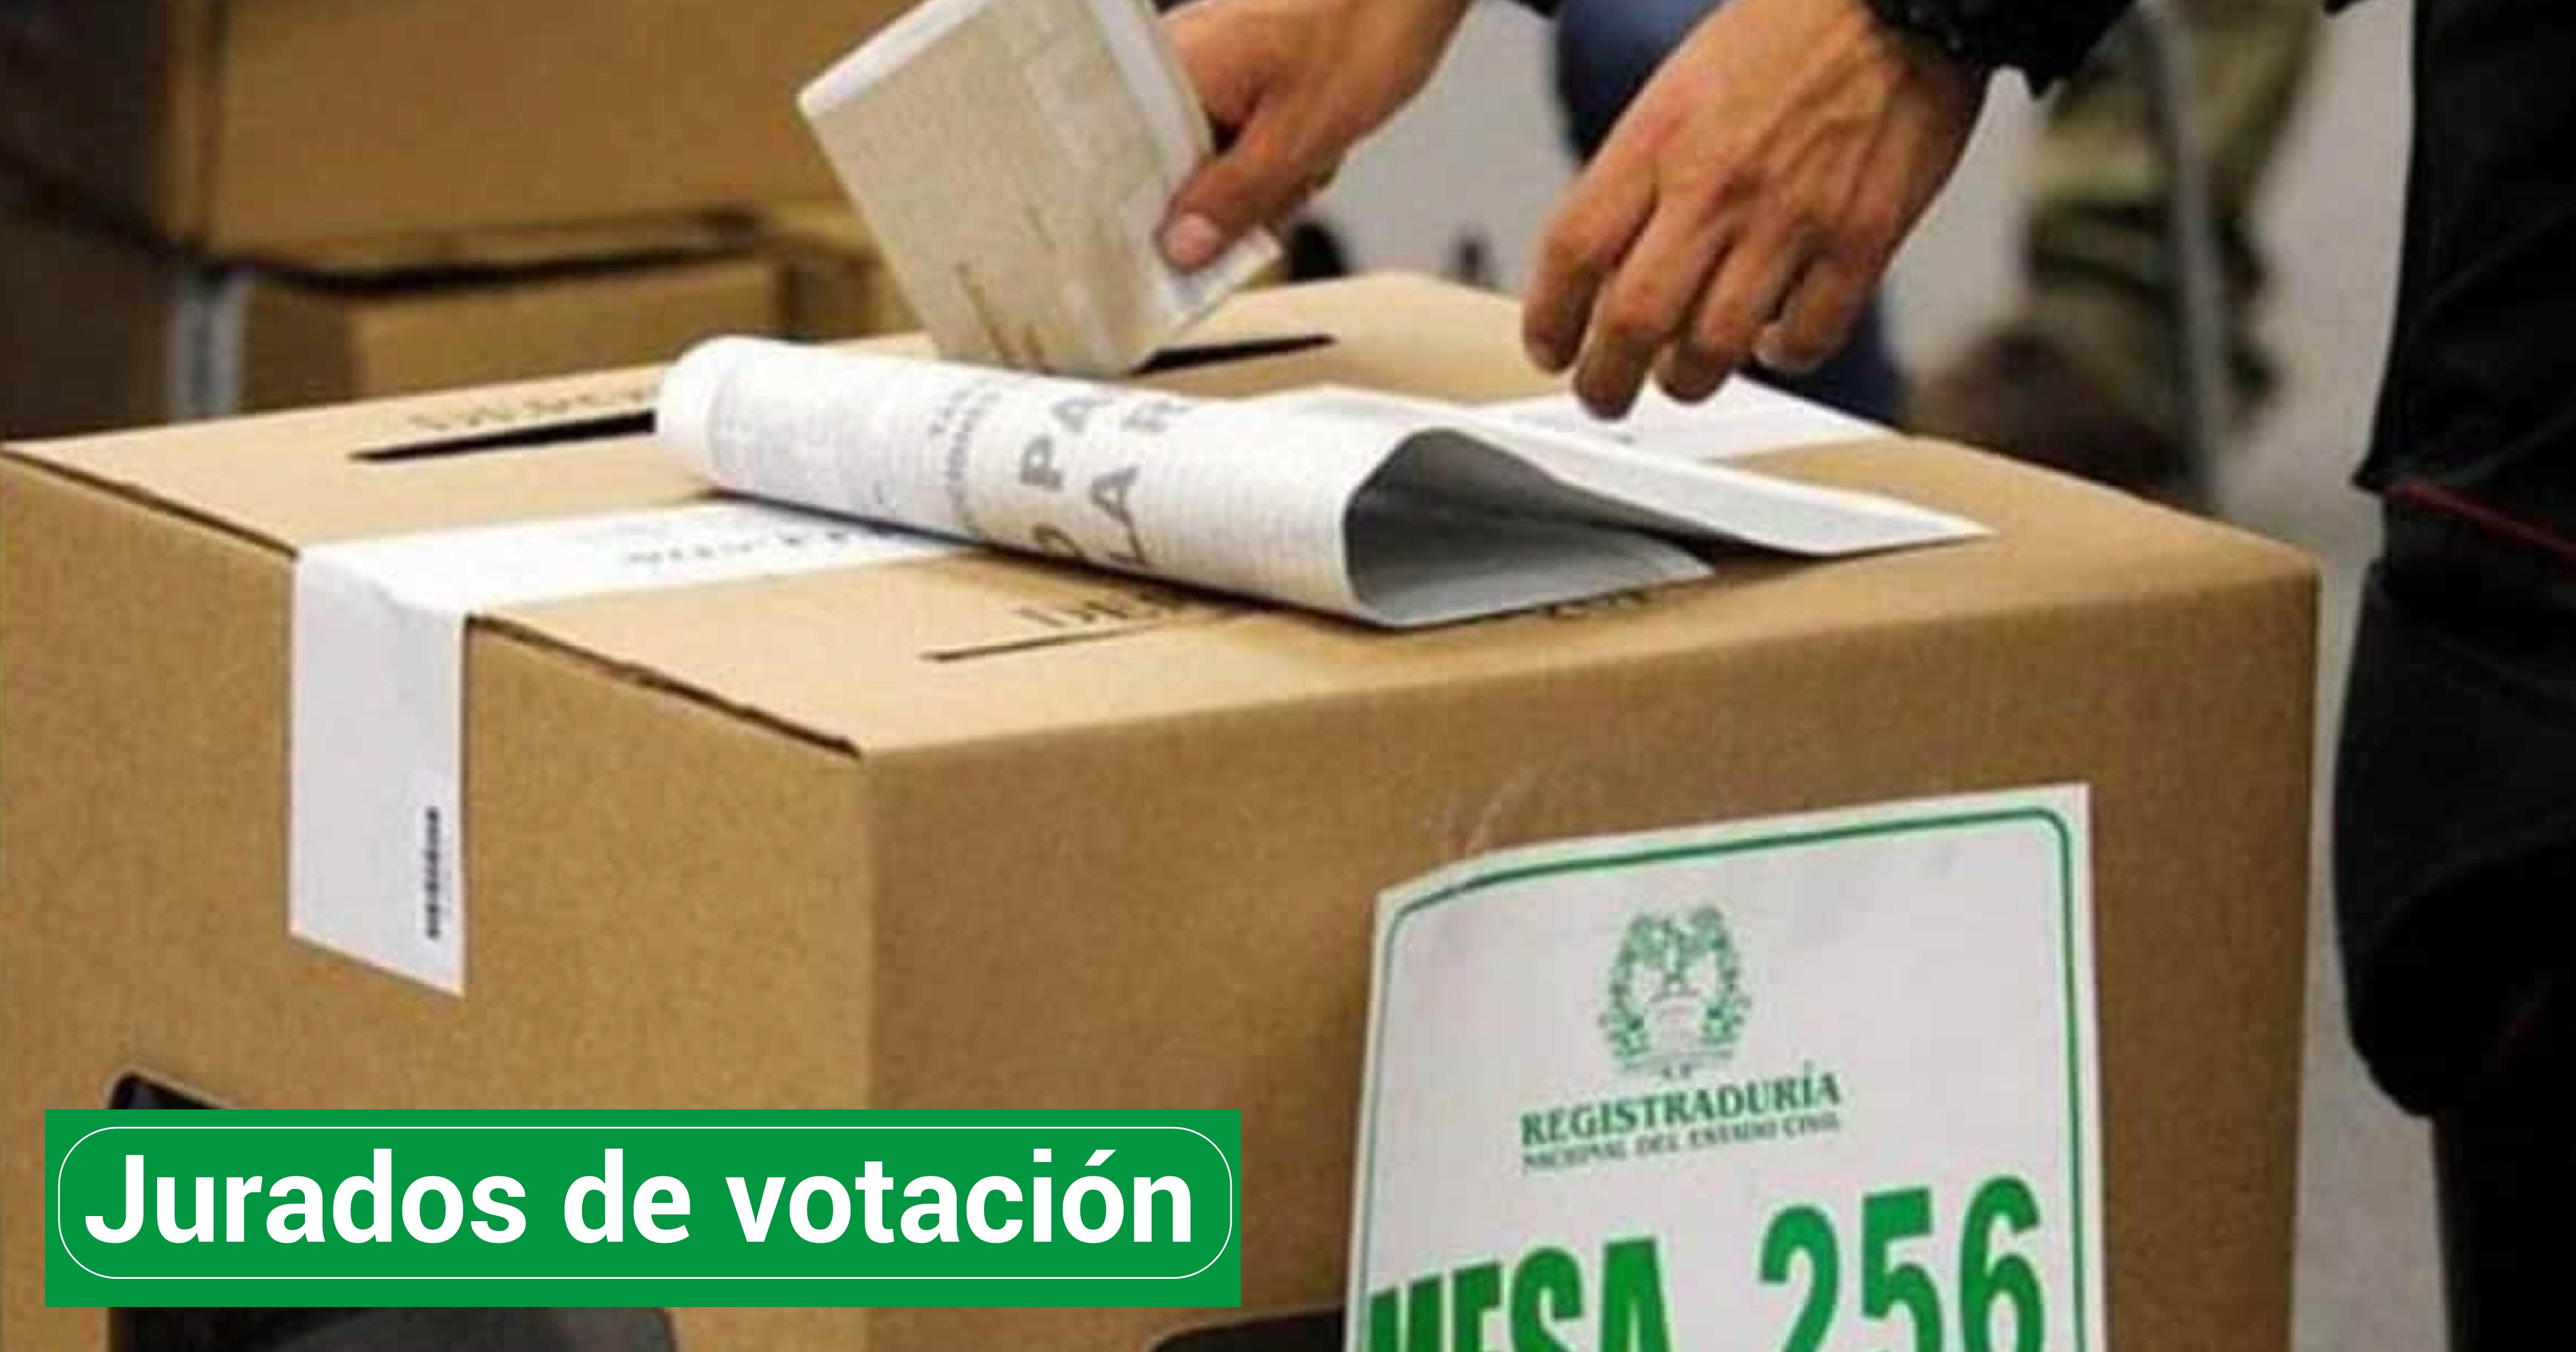 Designación como jurados de votación y capacitación para la jornada electoral